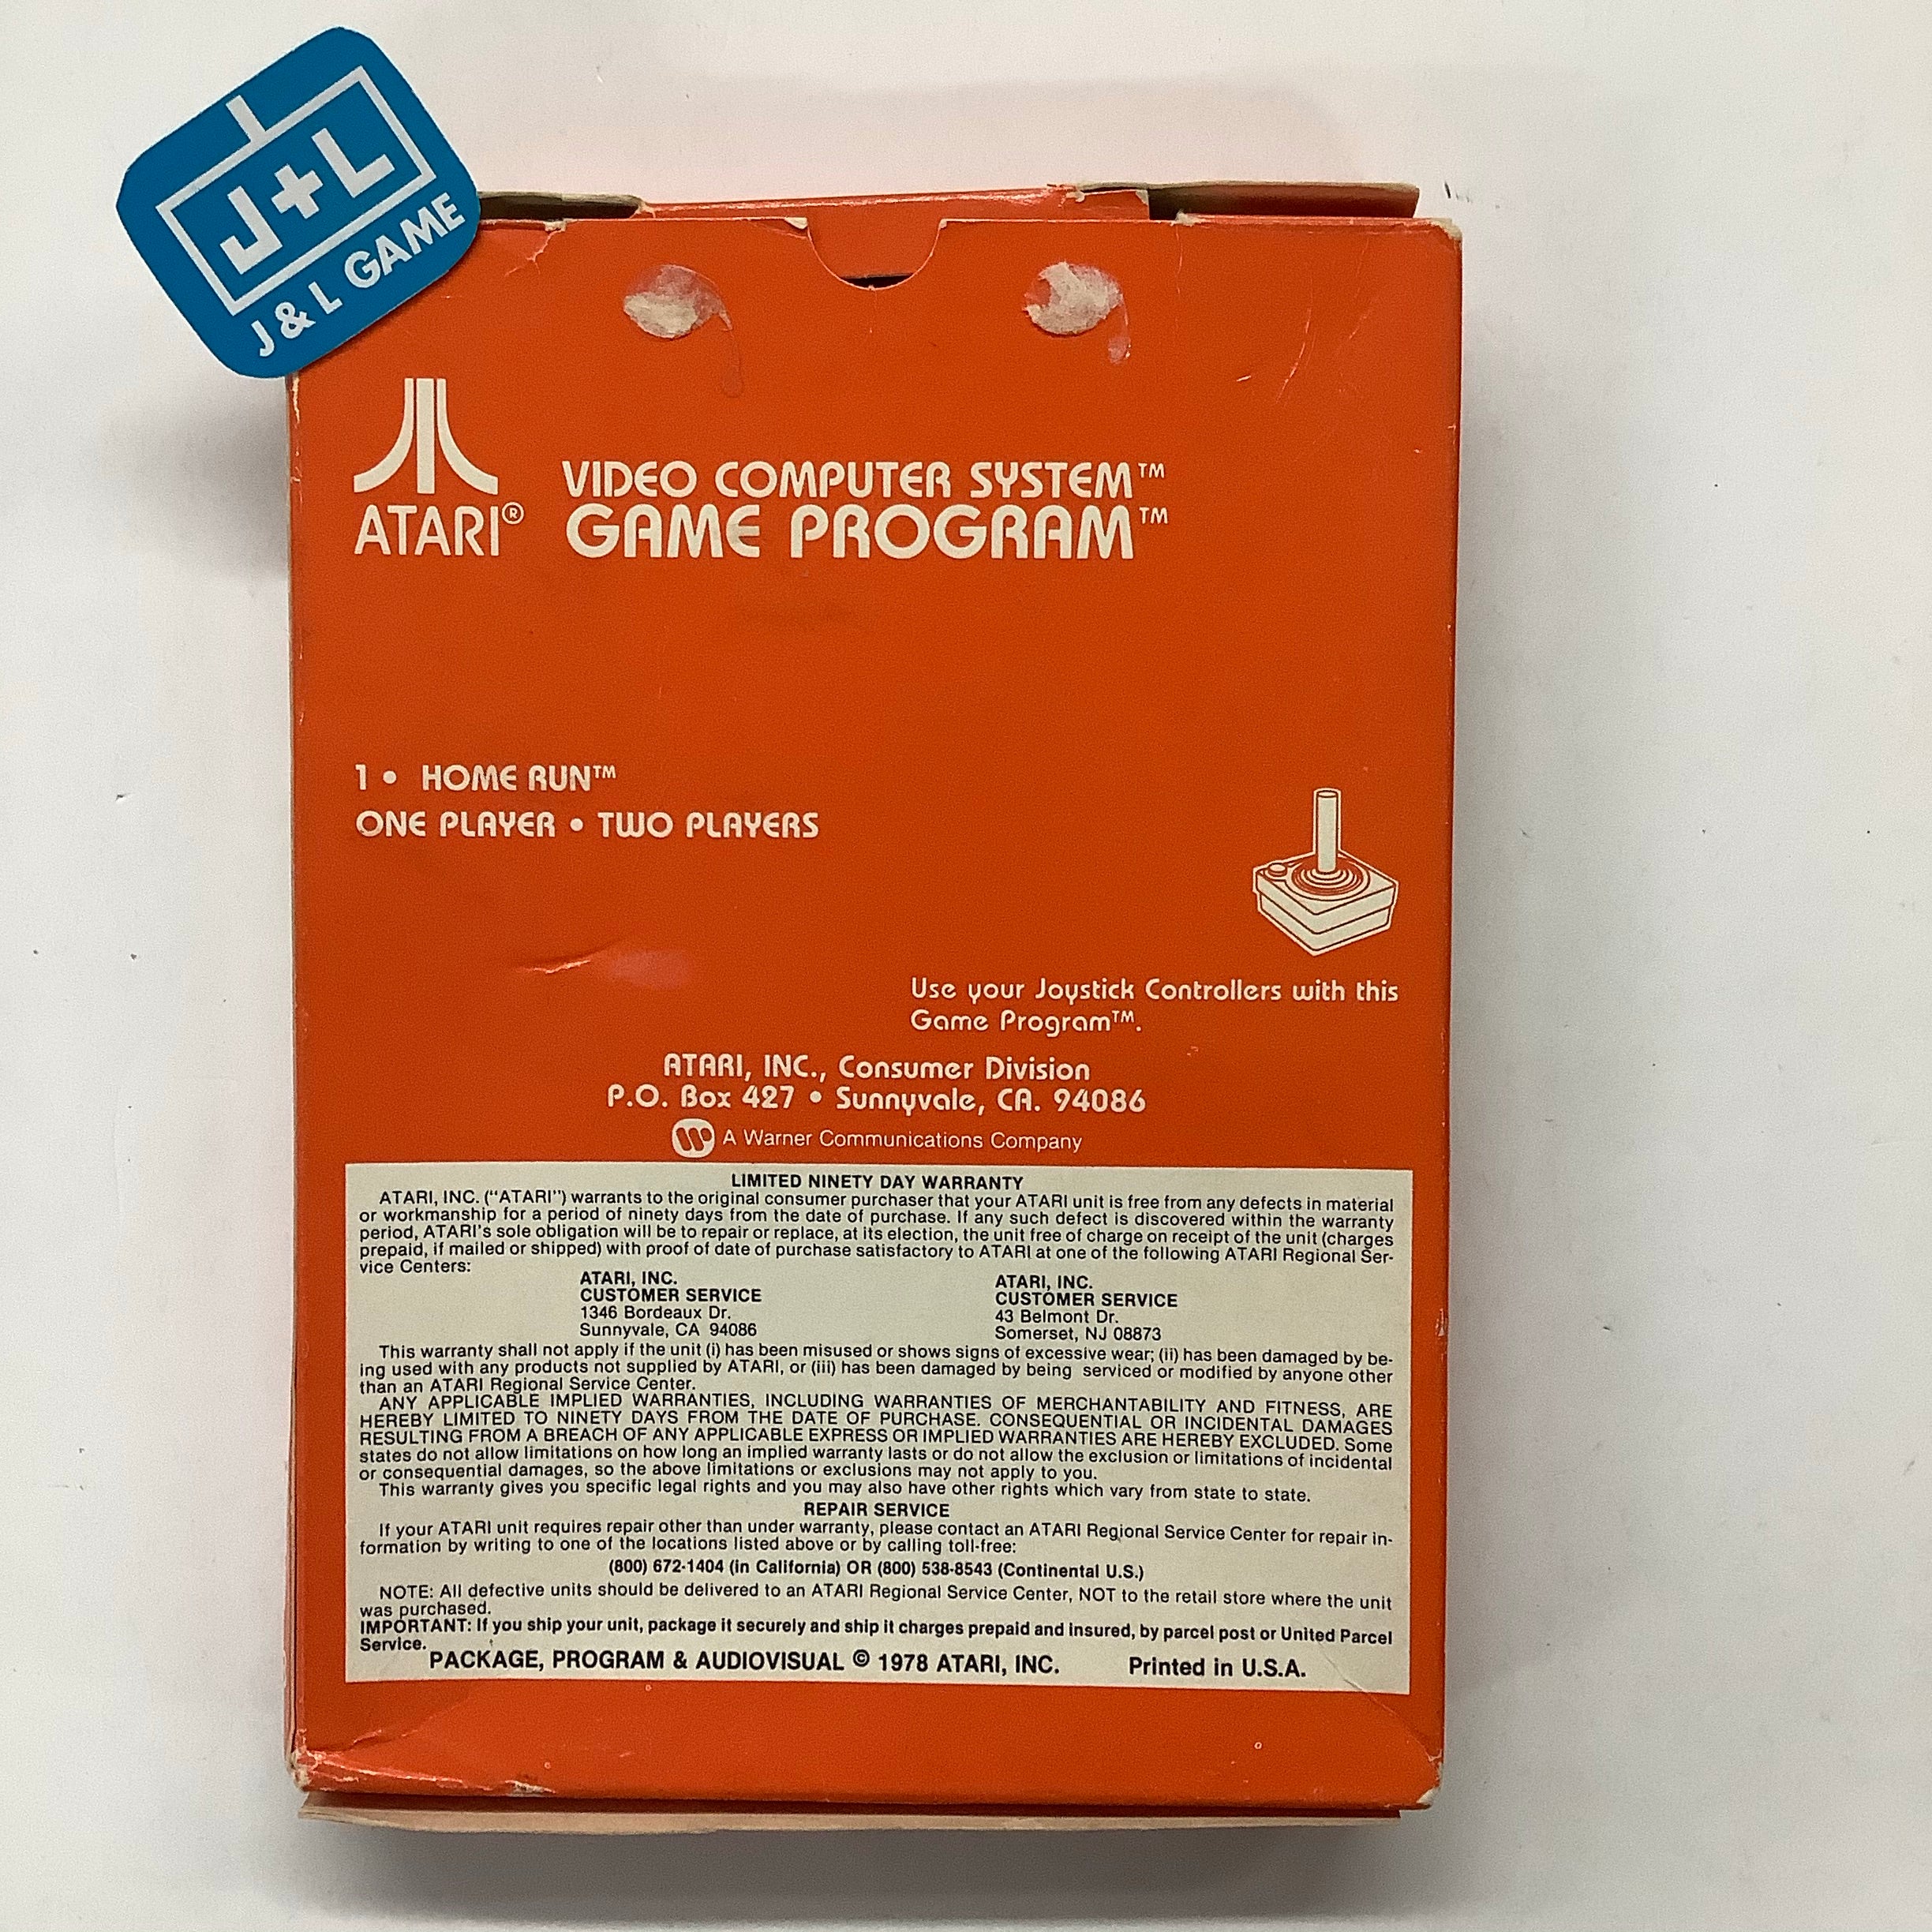 Home Run - Atari 2600 [Pre-Owned] Video Games Atari   